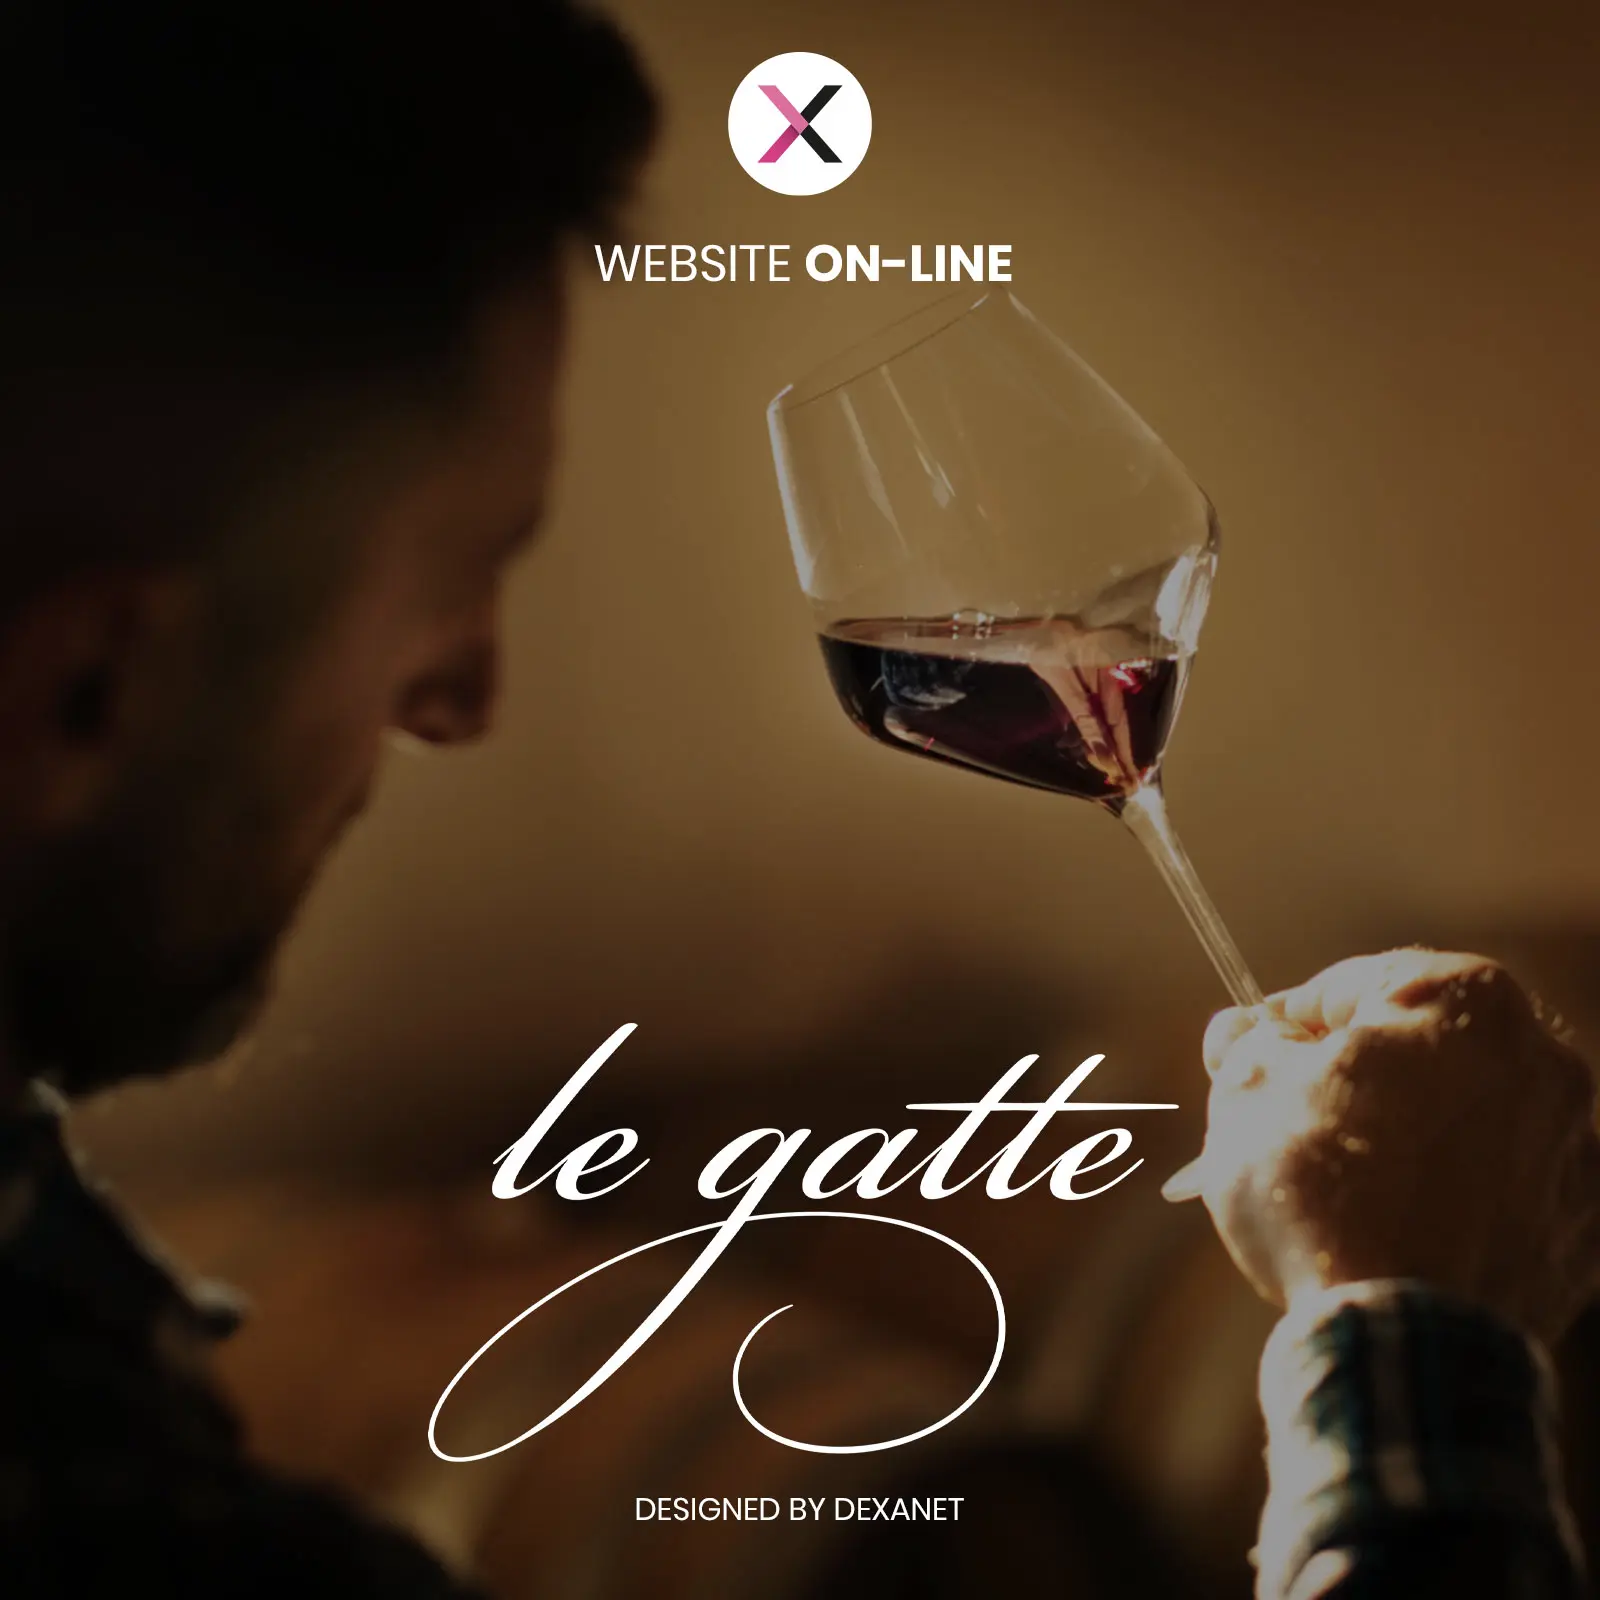 Un brindisi al nuovo sito web della cantina di vini Le Gatte.